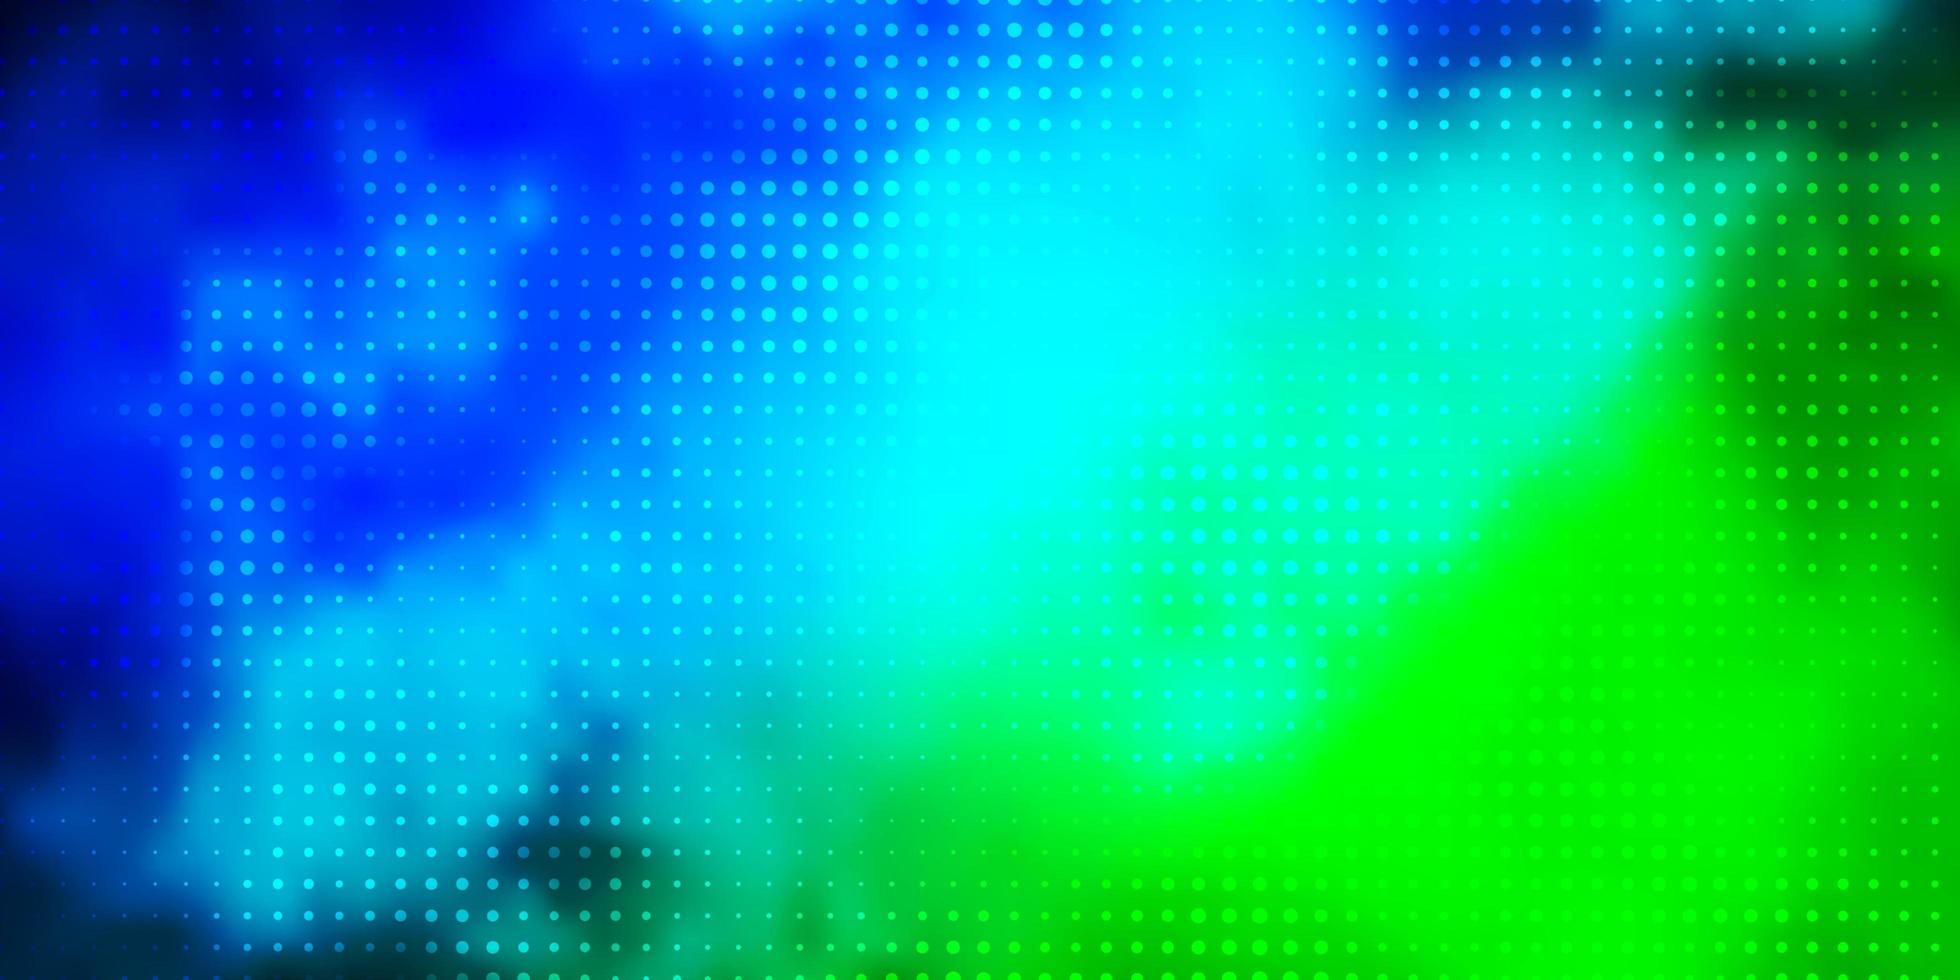 modelo de vetor azul e verde claro com círculos. projeto decorativo abstrato em estilo gradiente com bolhas. padrão para livretos, folhetos.